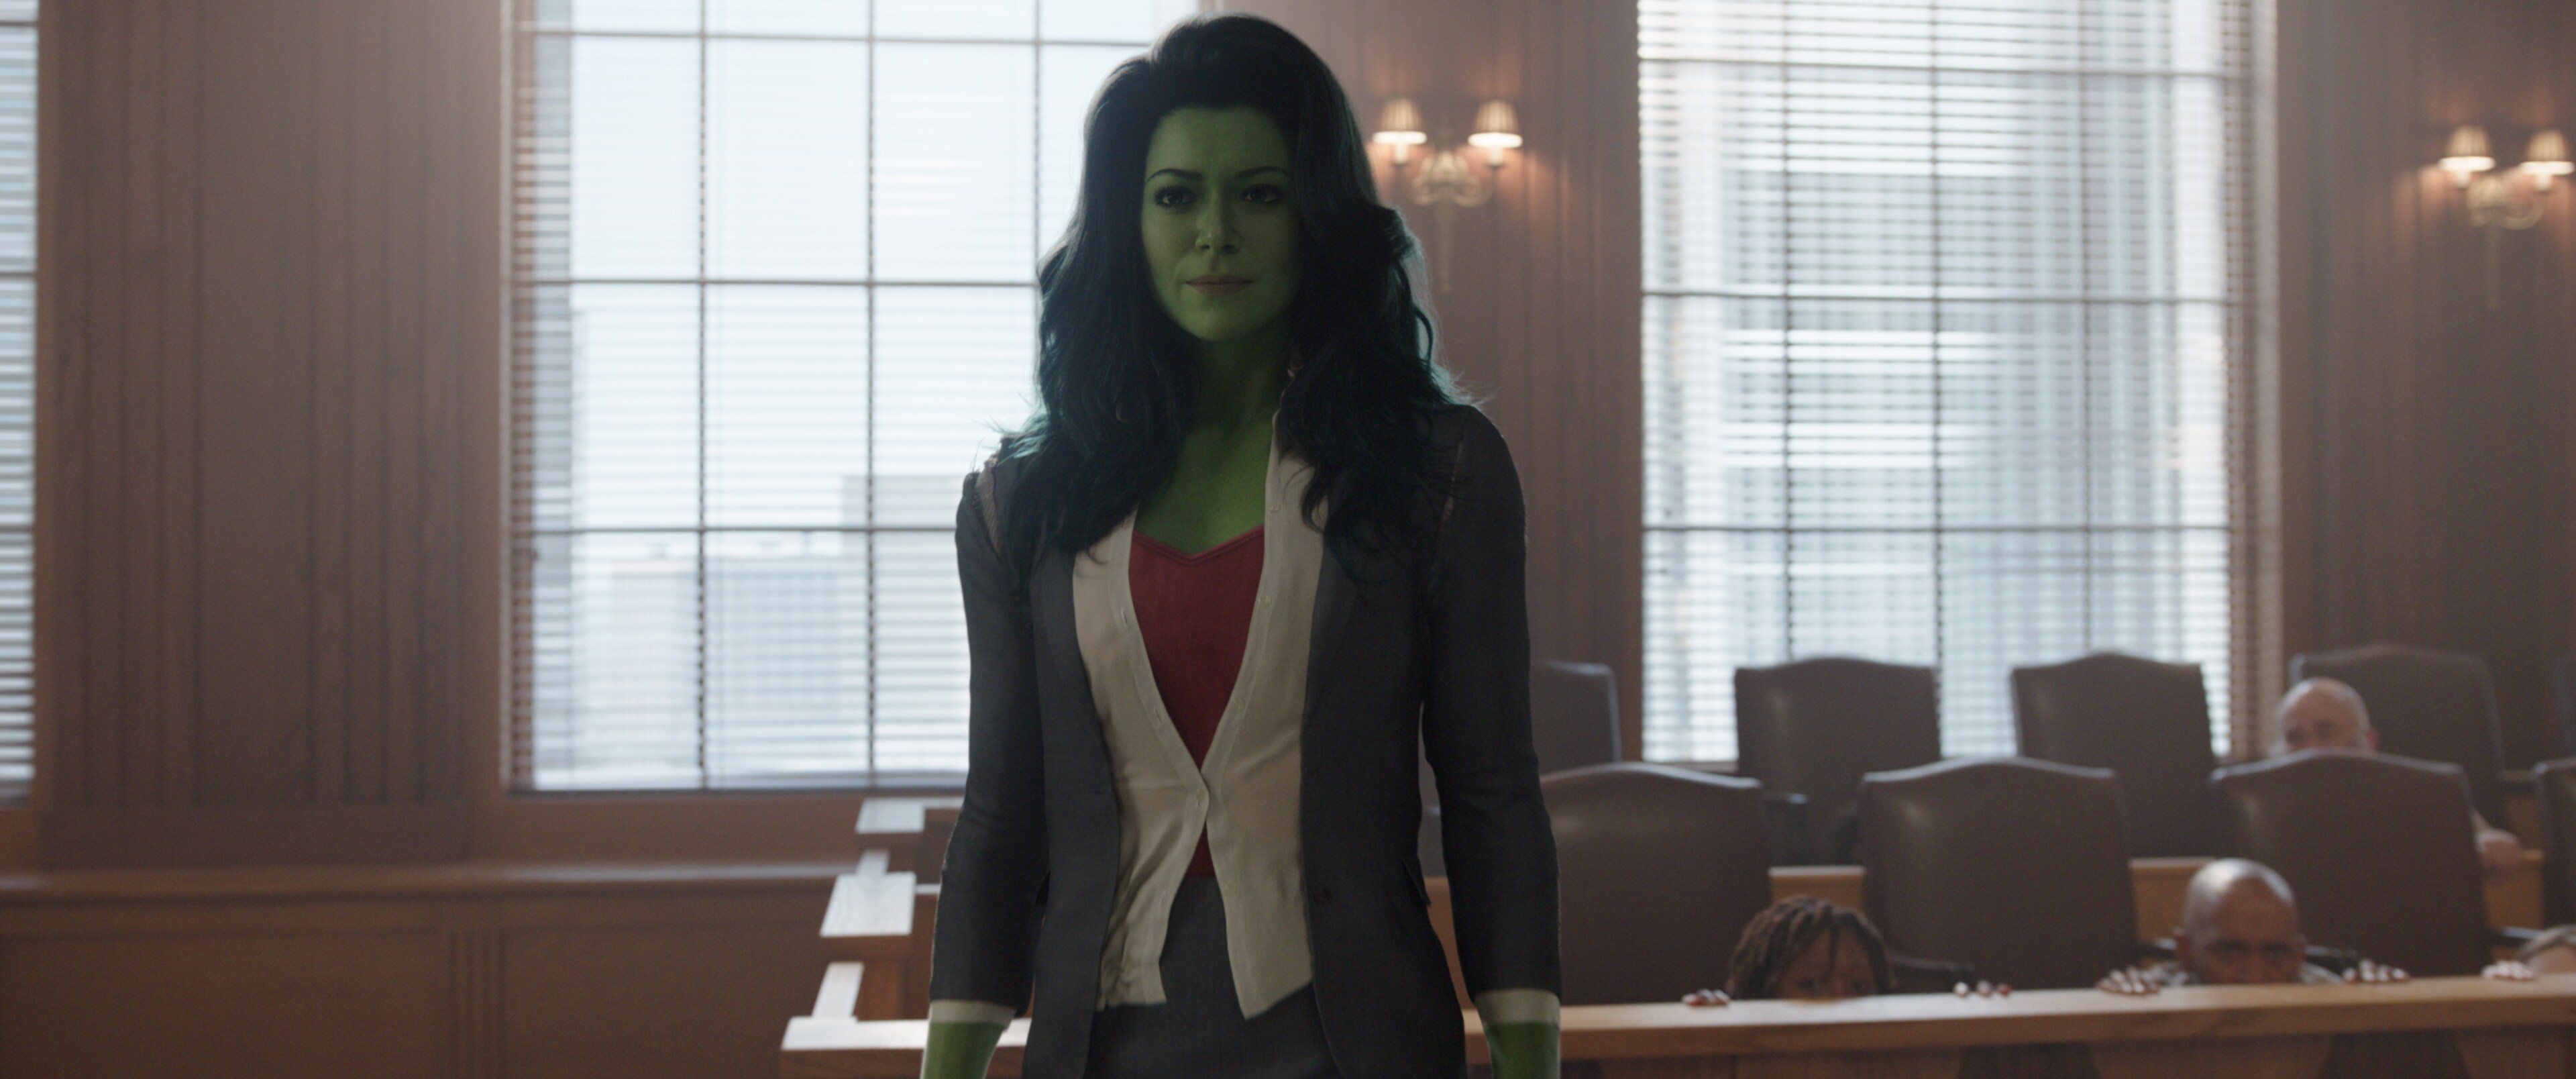 Mulher-Hulk: quando serão lançados os episódios? Veja calendário